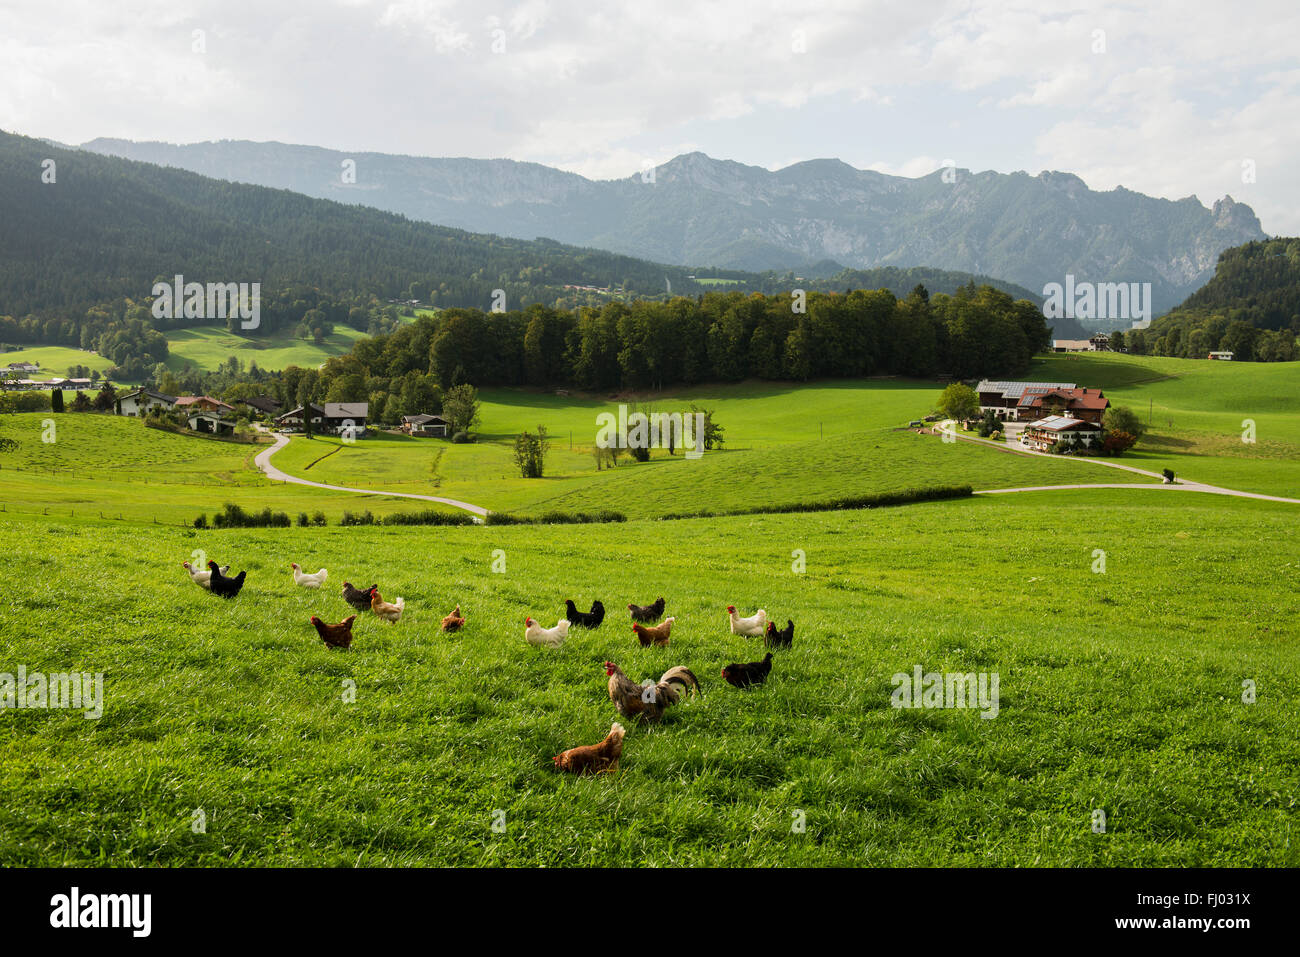 Feliz intervalo libre de pollo, gallinas en una pradera, cerca de la granja de Berchtesgaden, distrito de Berchtesgadener Land, Alta Baviera, Baviera Foto de stock